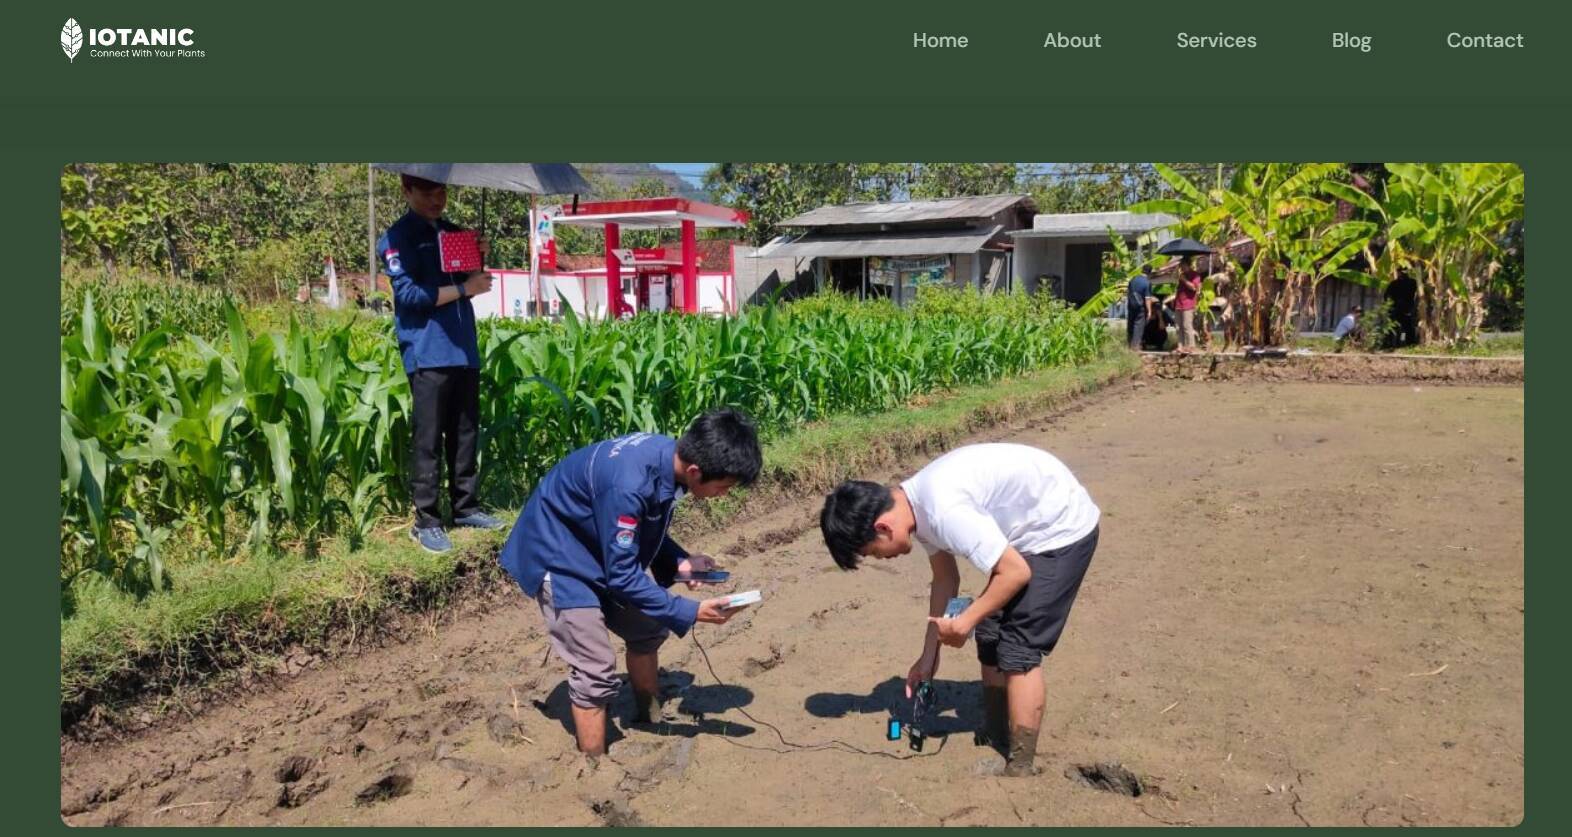 天候・土壌・害虫発生をモニタリングする「IoTanic」、インドネシアの農業をスマート化